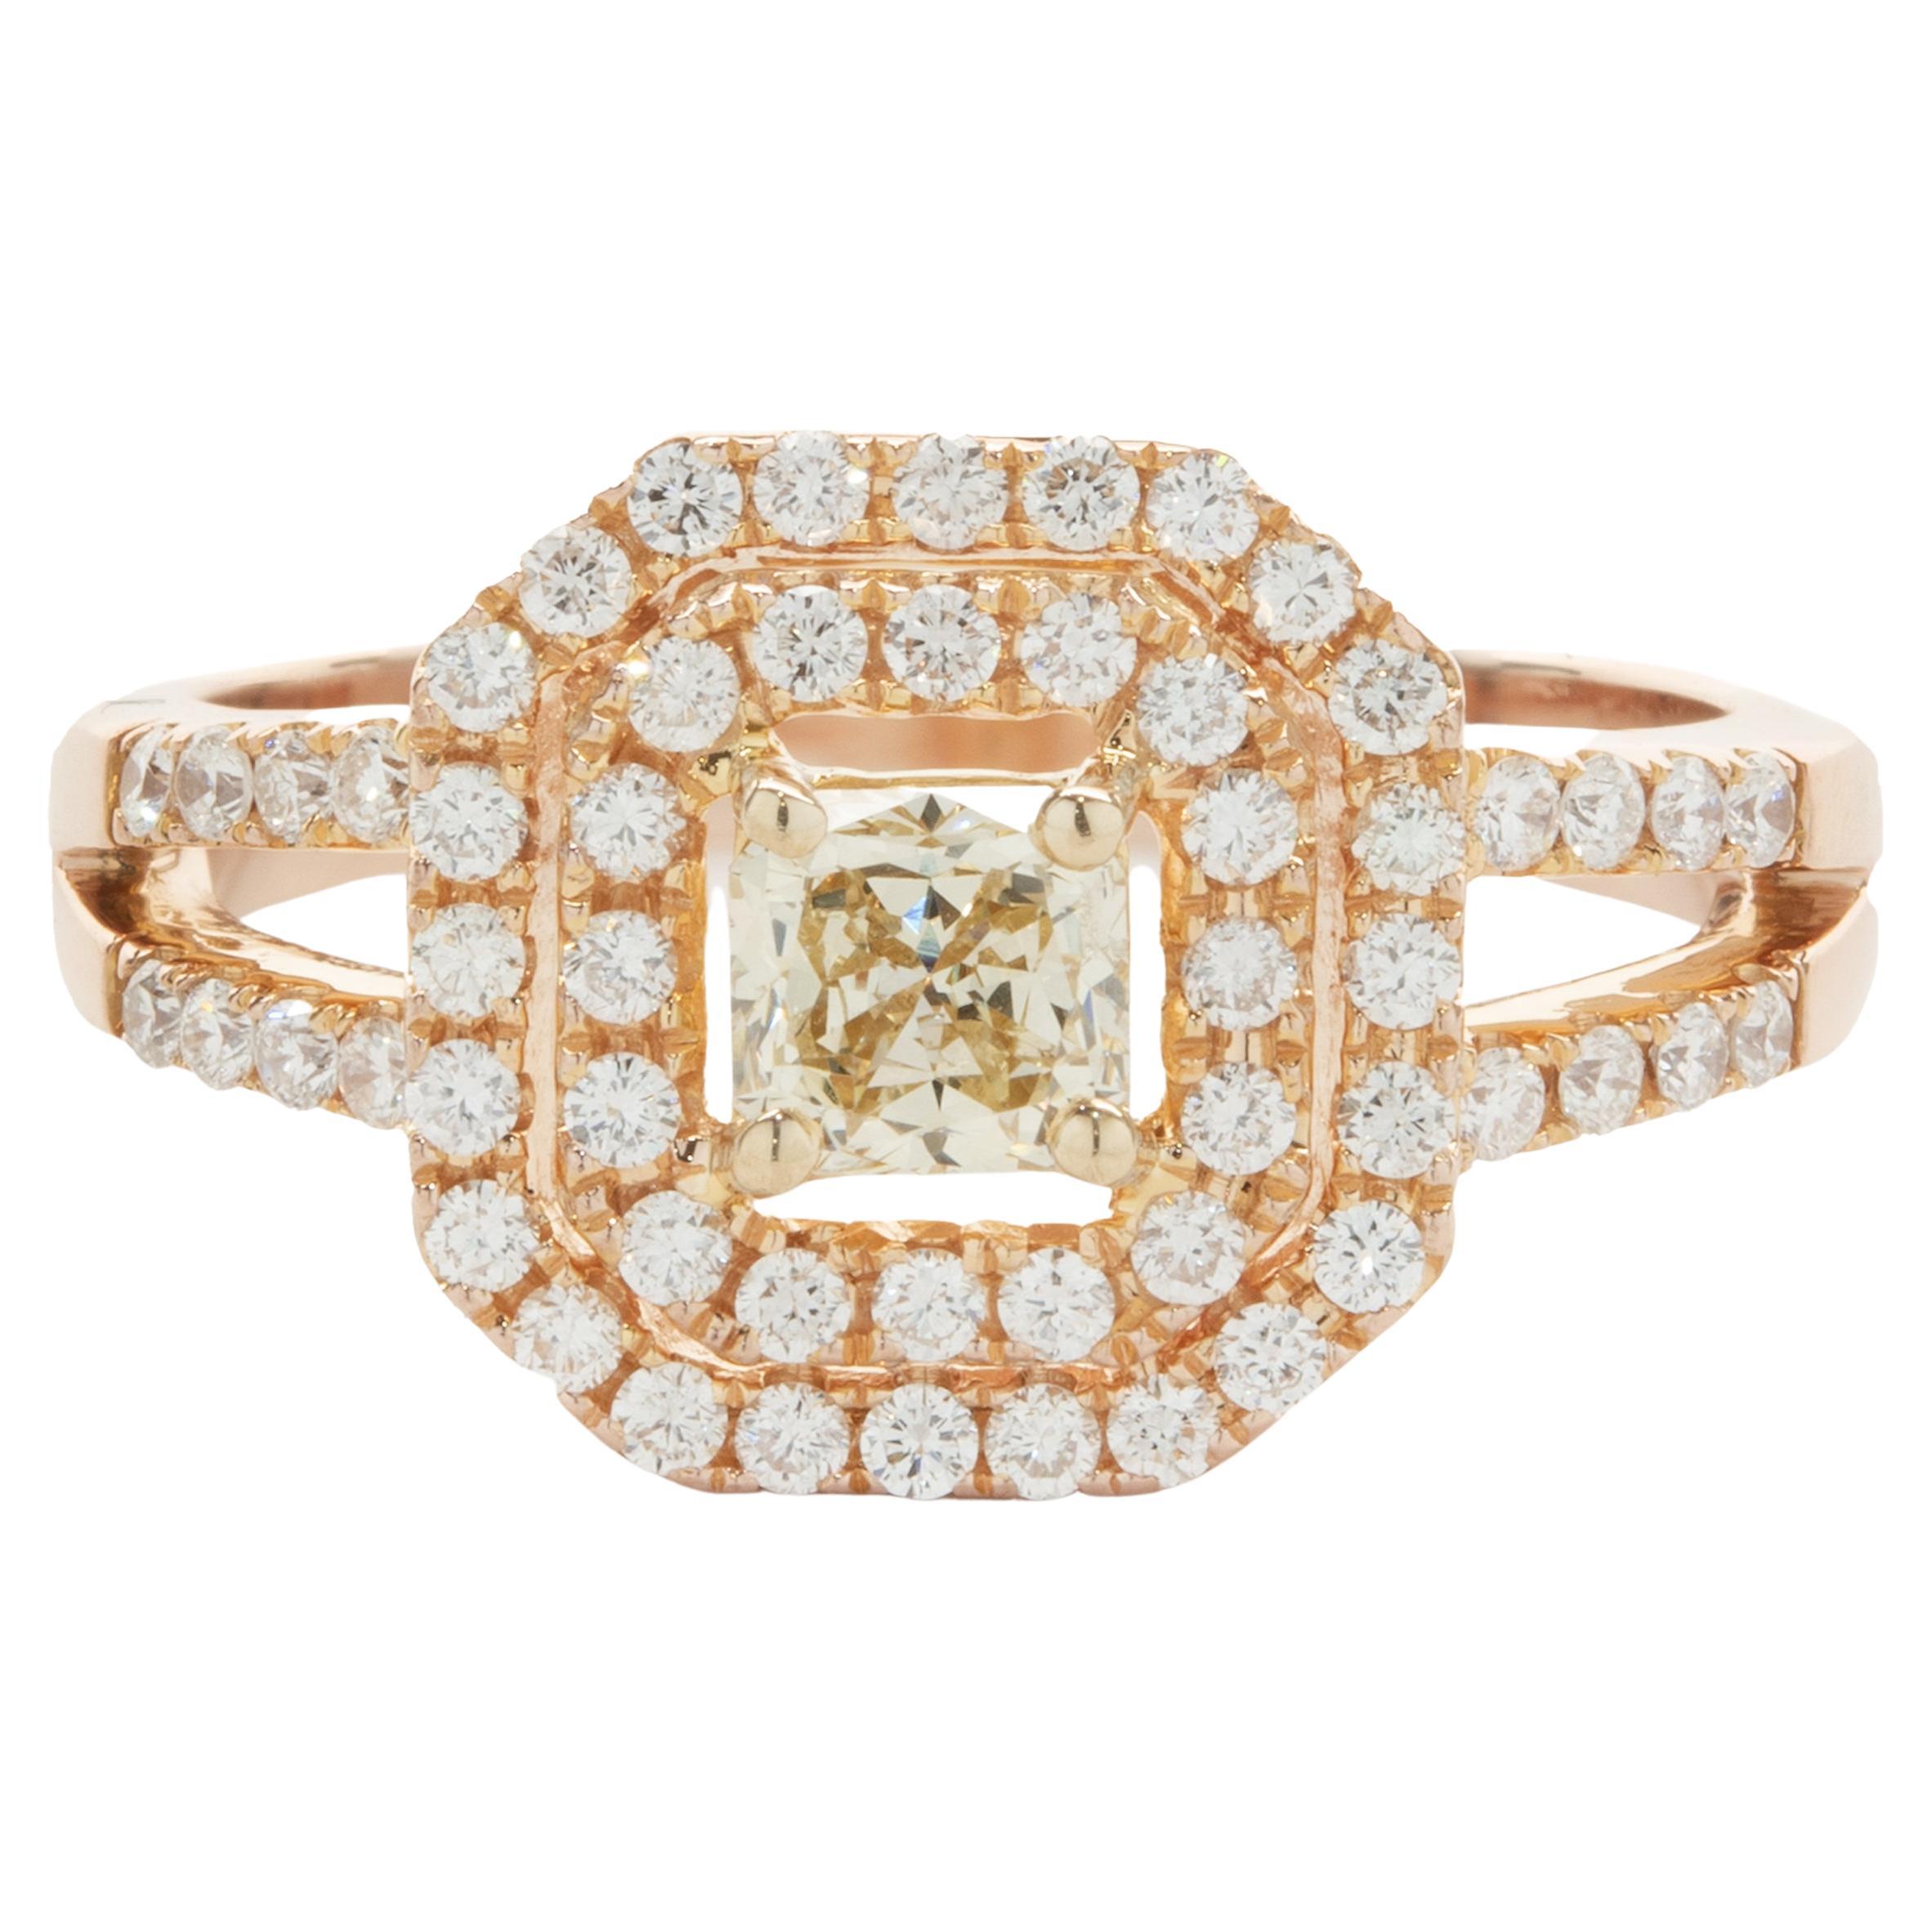 Bague de fiançailles en or rose 18 carats avec diamants jaunes et blancs de couleur fantaisie